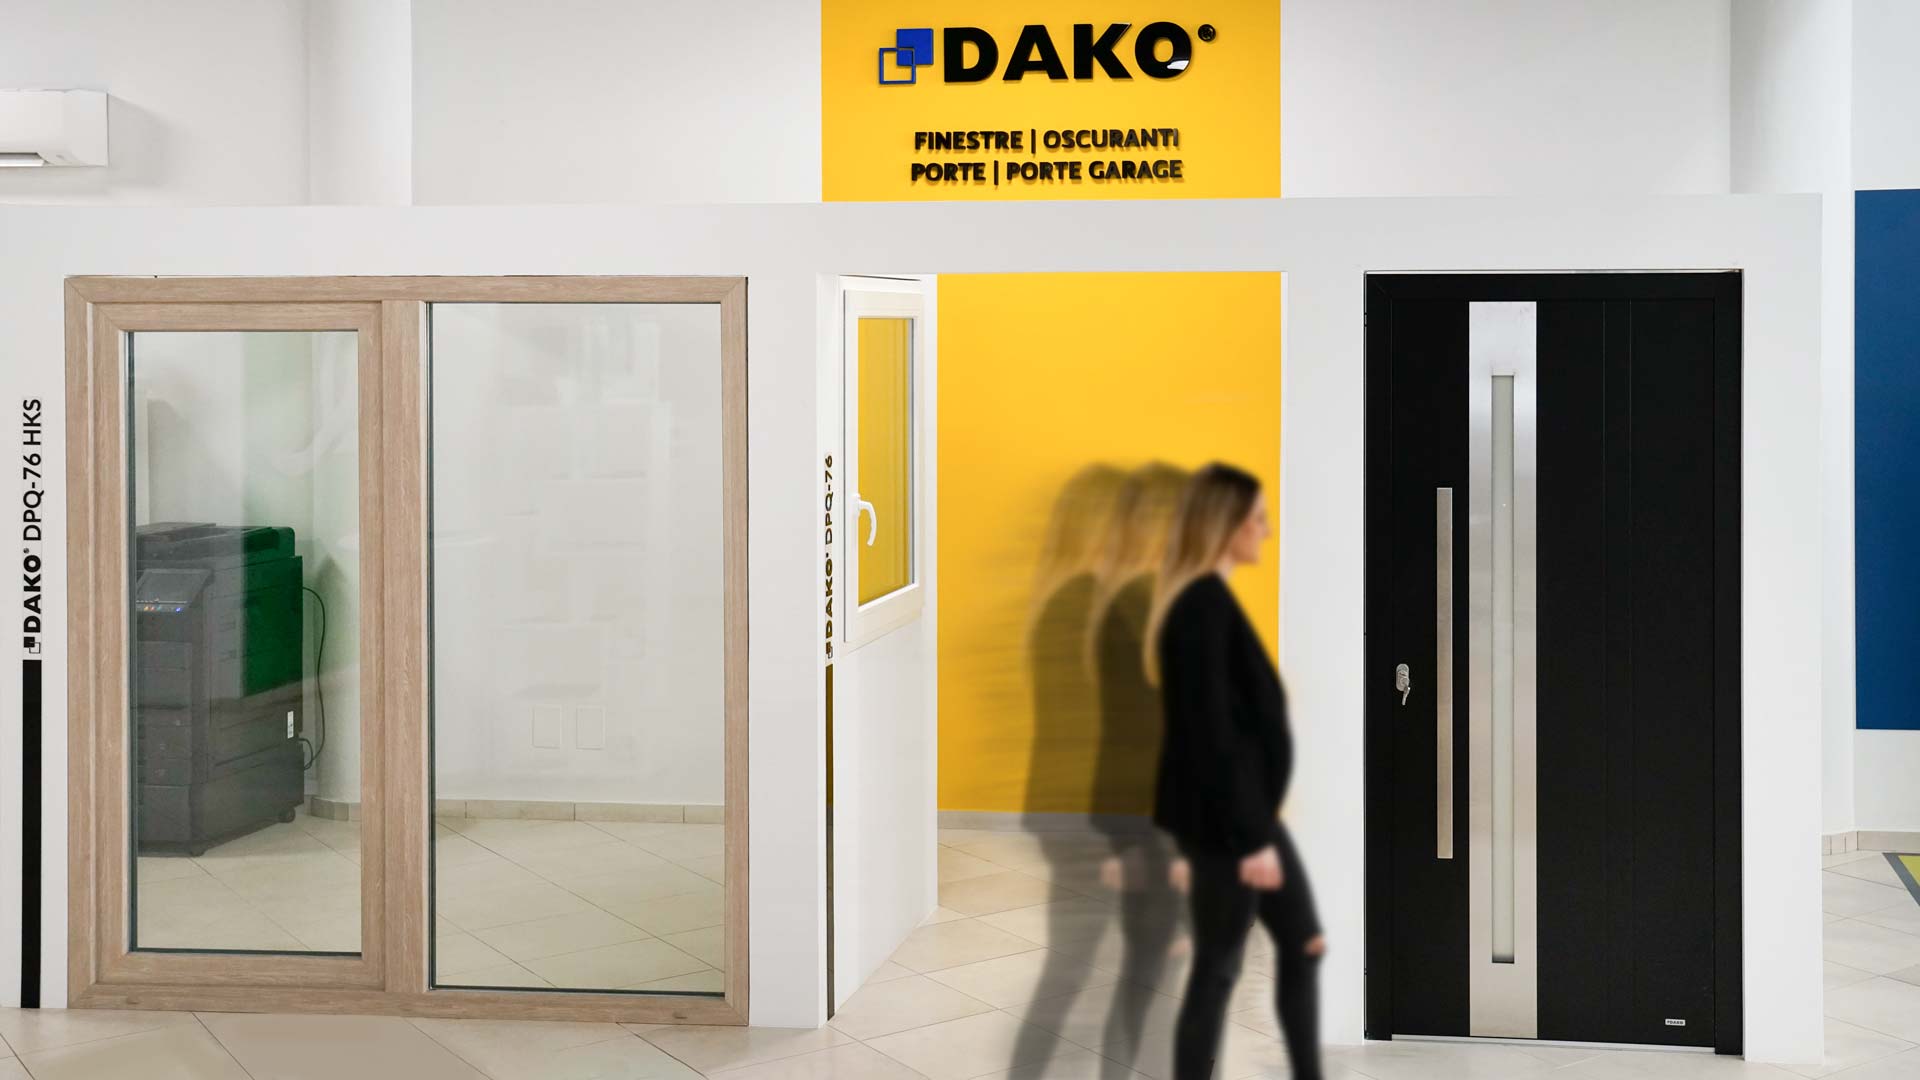 Dako-finestre-e-porte